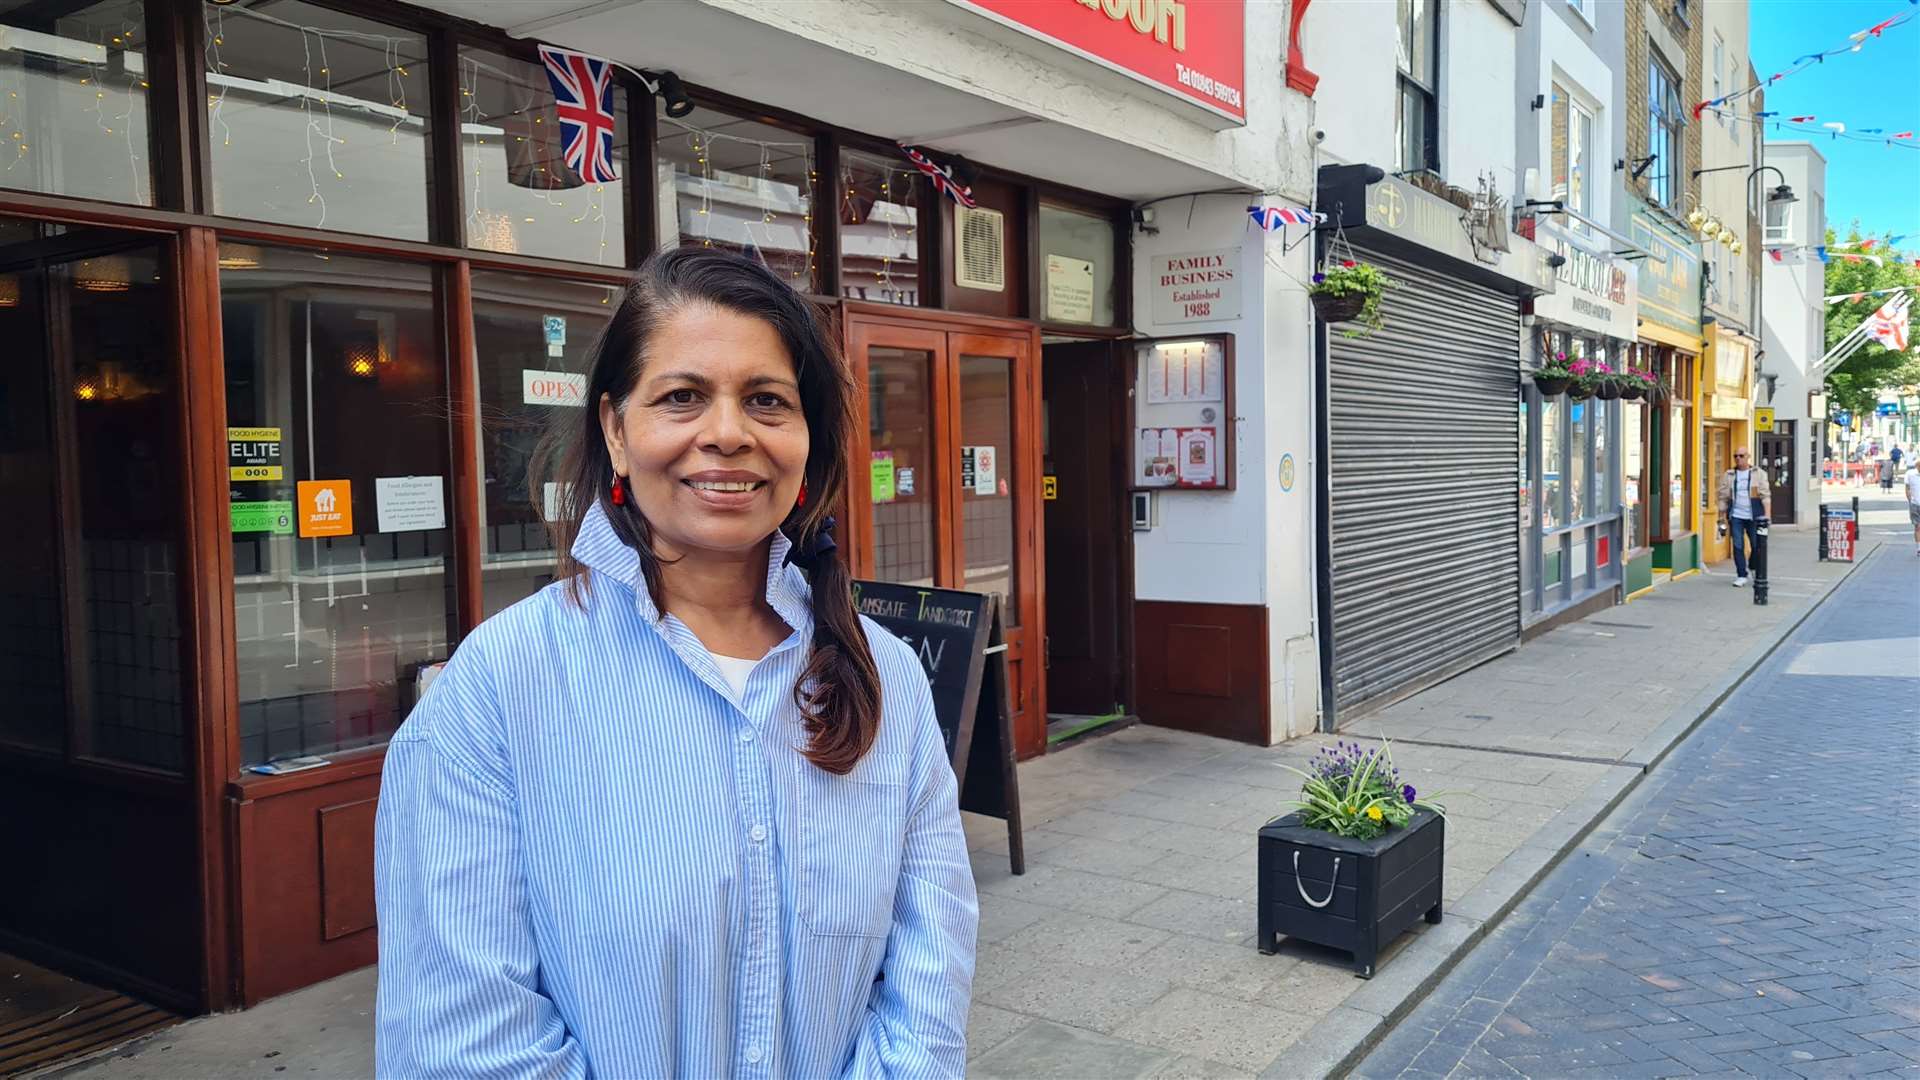 Mayor of Ramsgate and Indian restaurant owner Raushan Ara